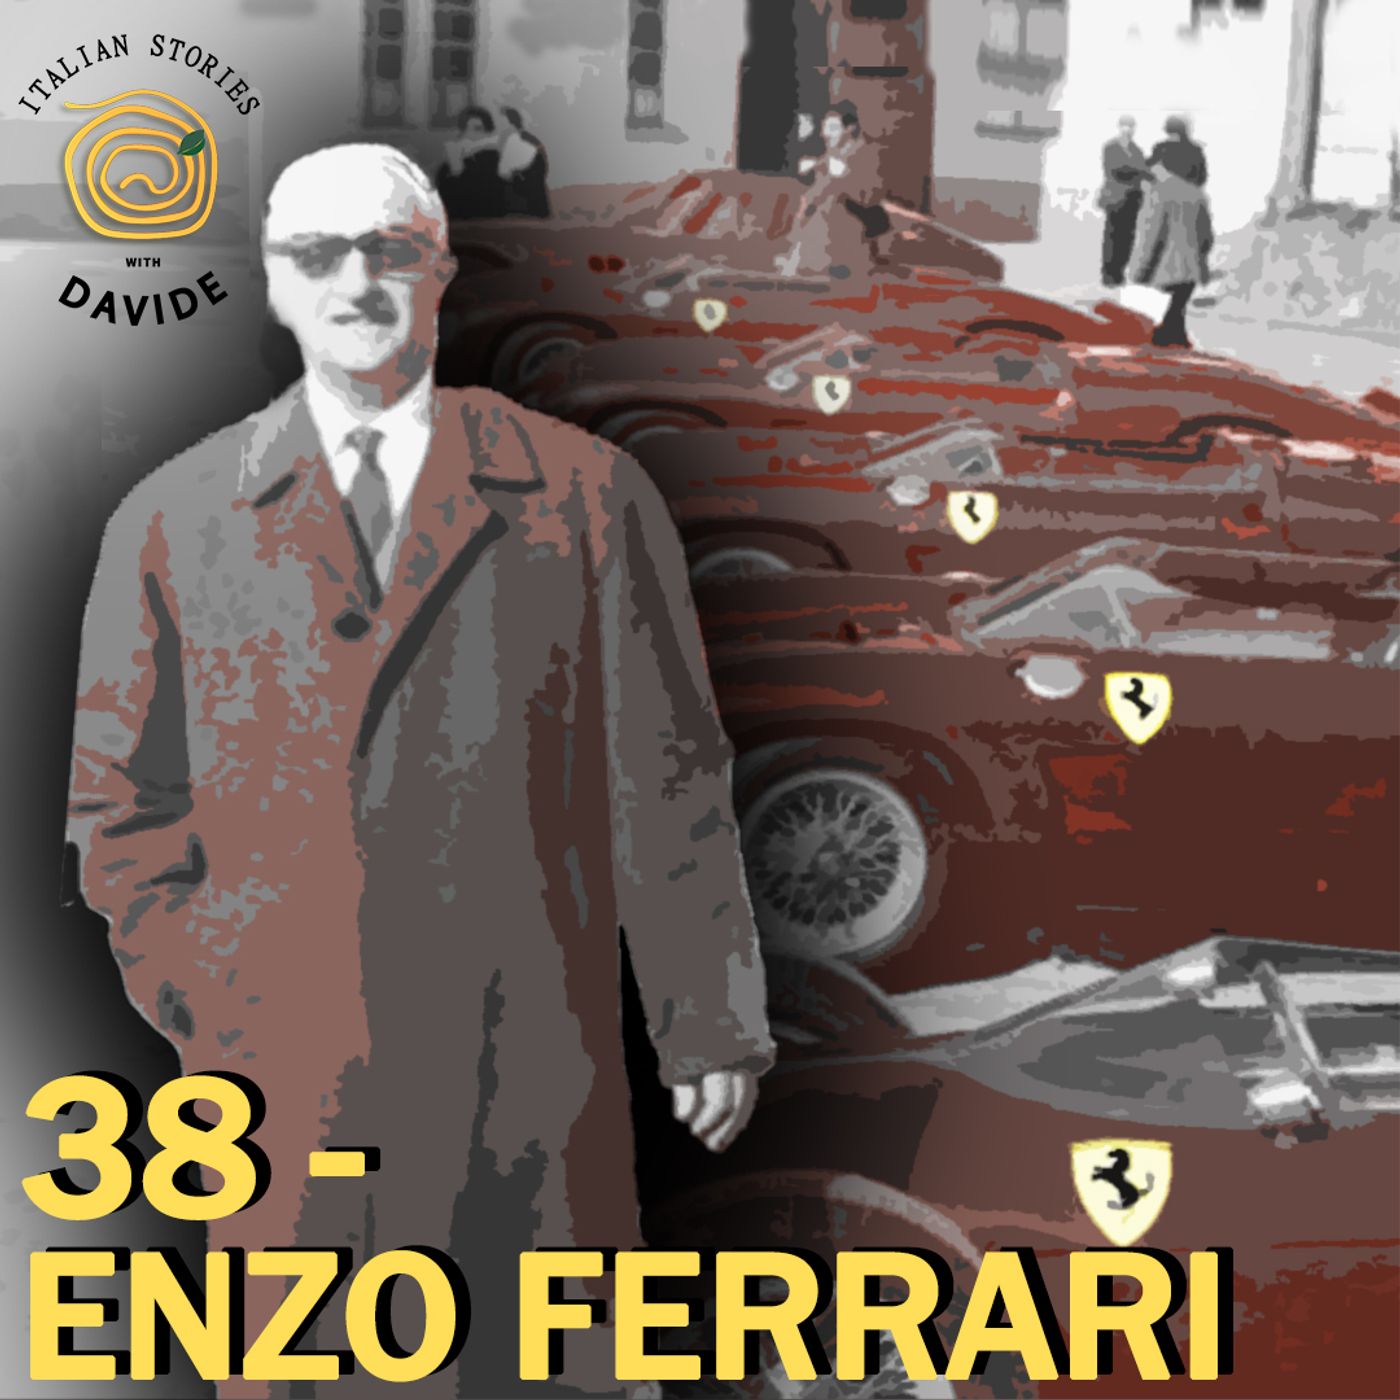 38 - Enzo Ferrari